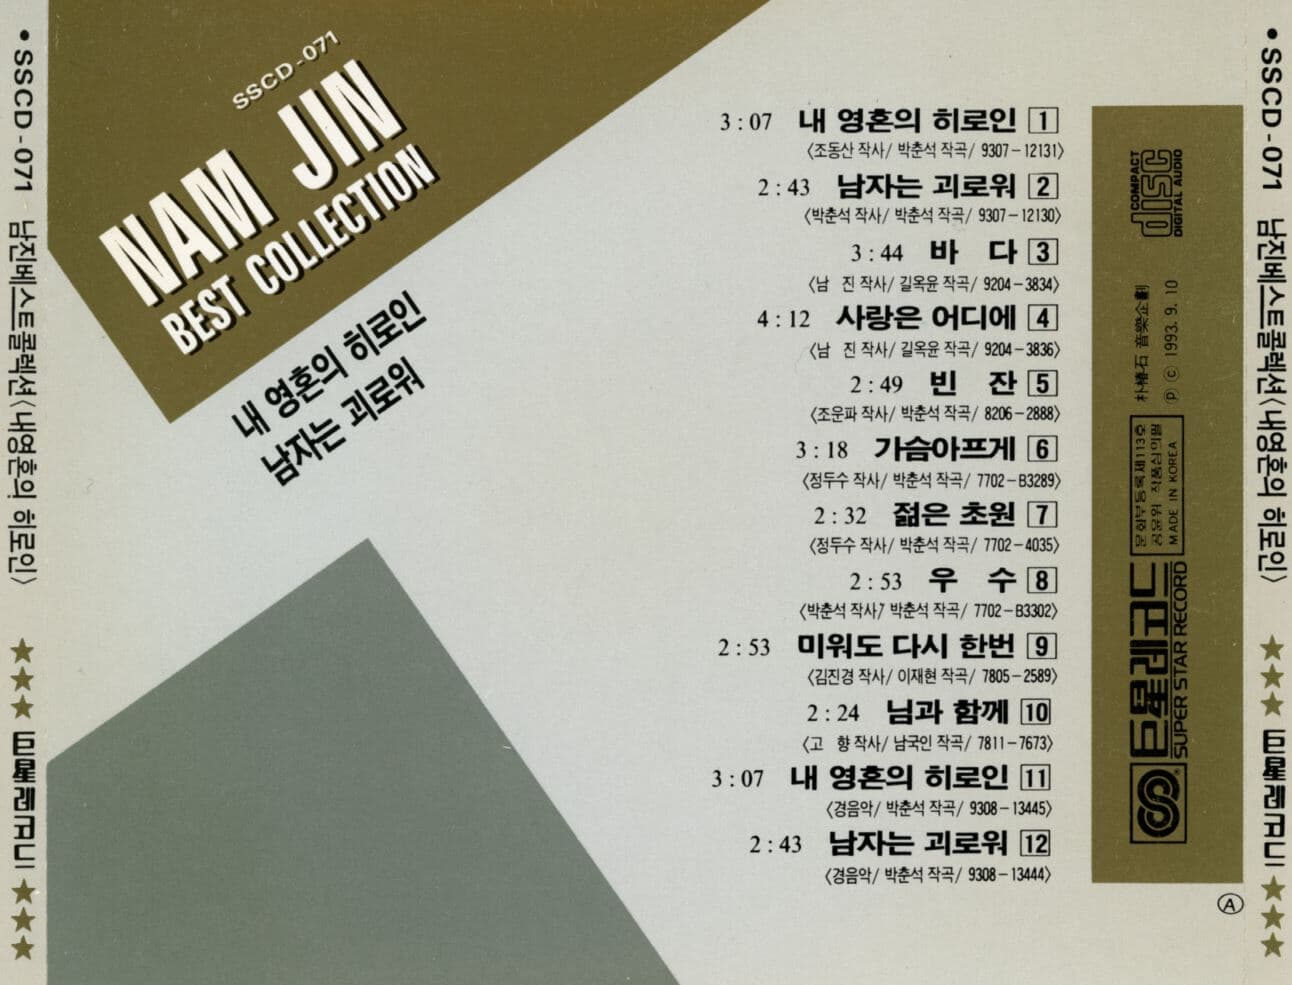 남진 - Nam Jin Best Collection